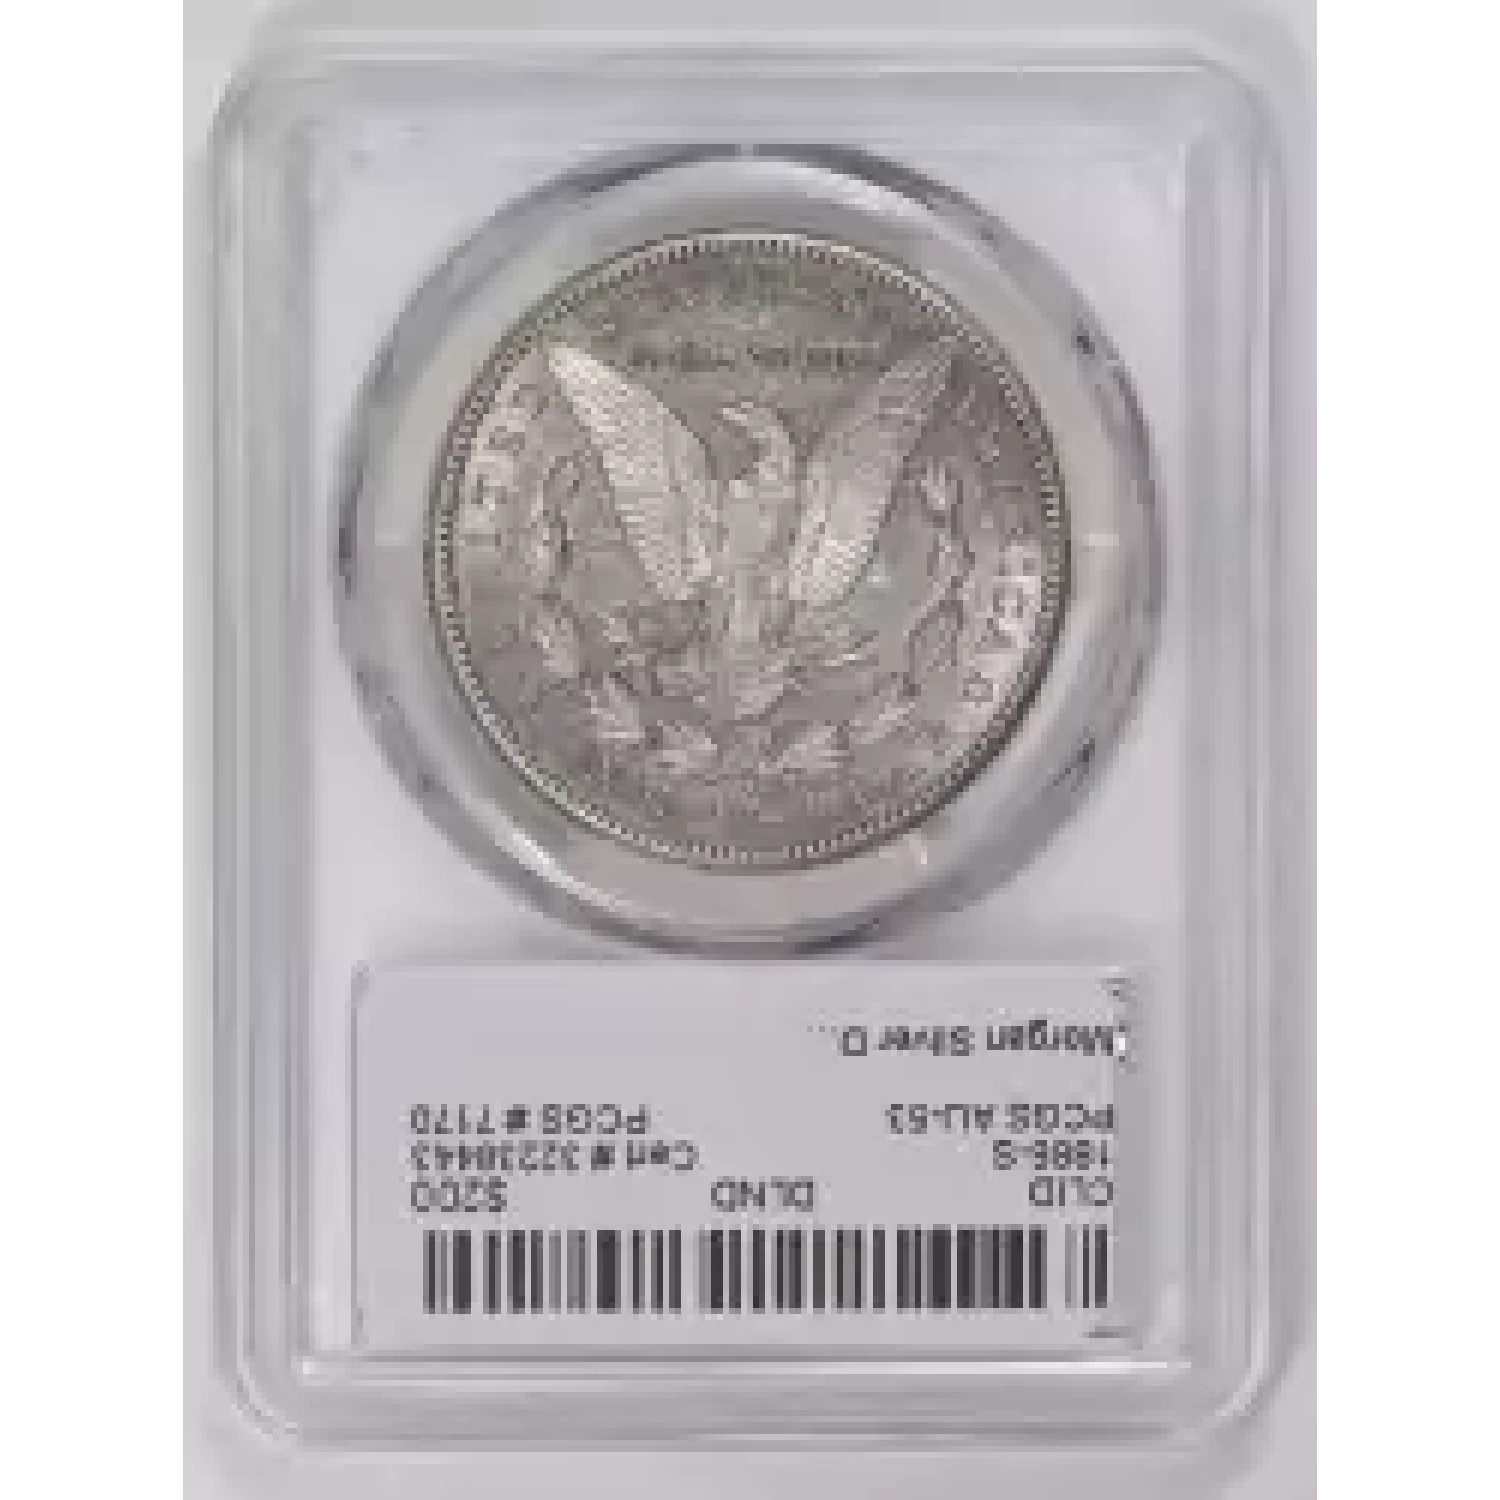 1886-S $1 (2)